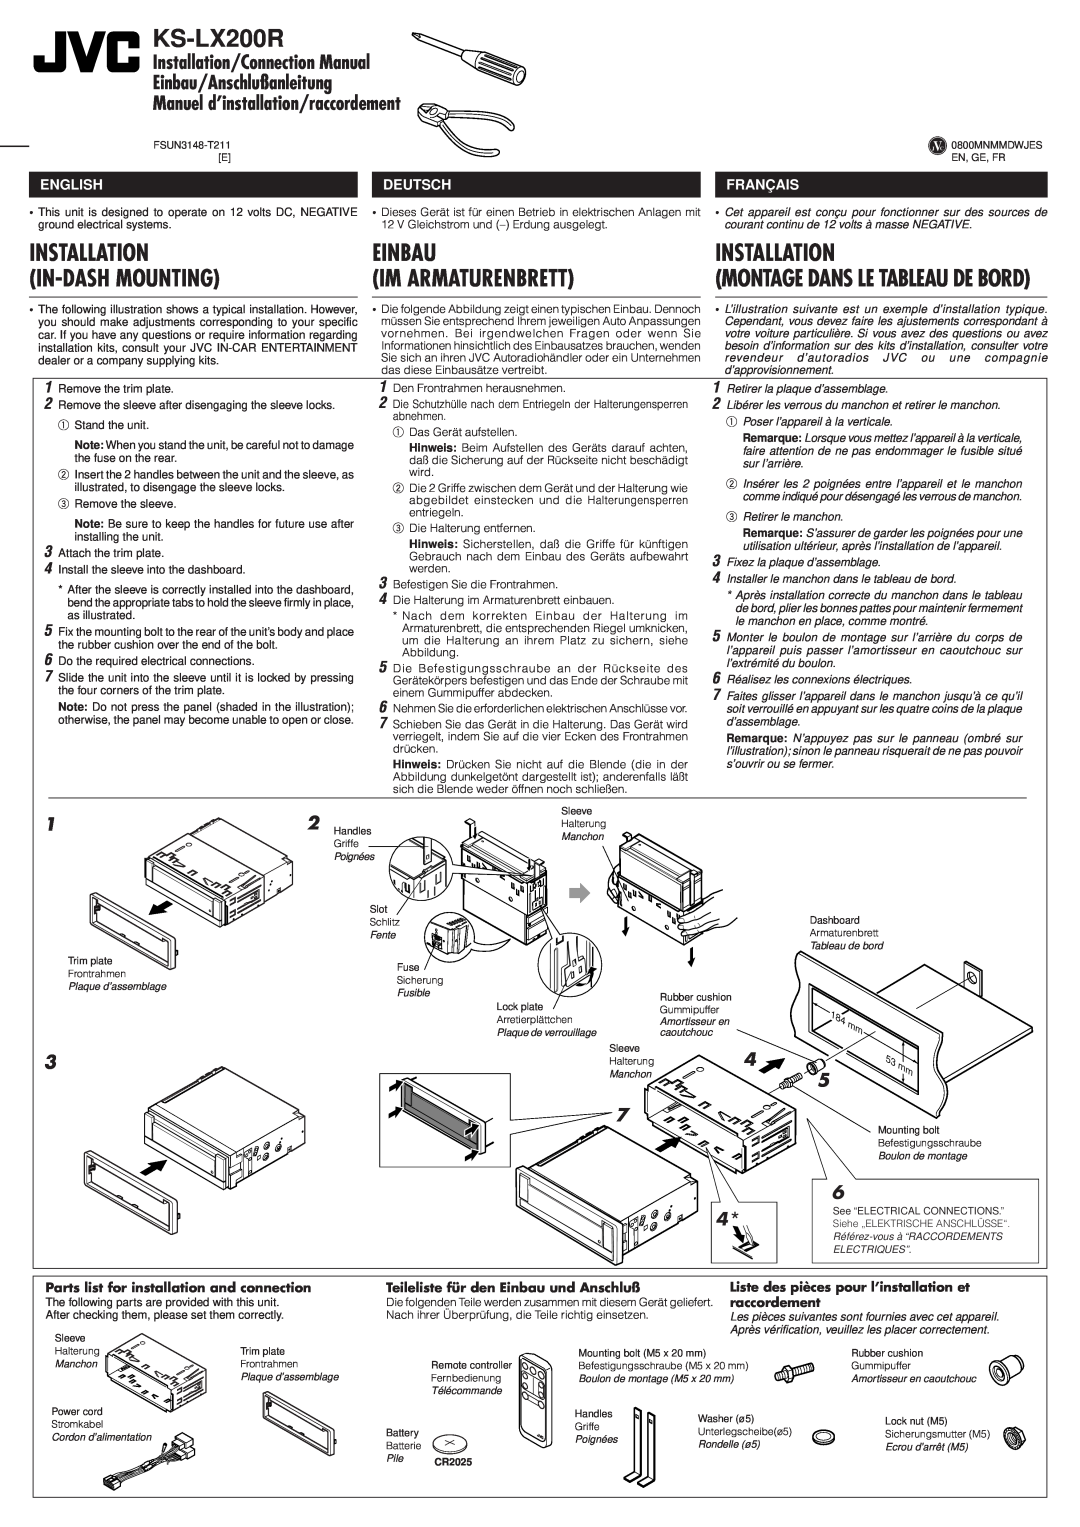 JVC KS-LX200R manual Installation, Einbau, In-Dashmounting, Im Armaturenbrett, Montage Dans Le Tableau De Bord 